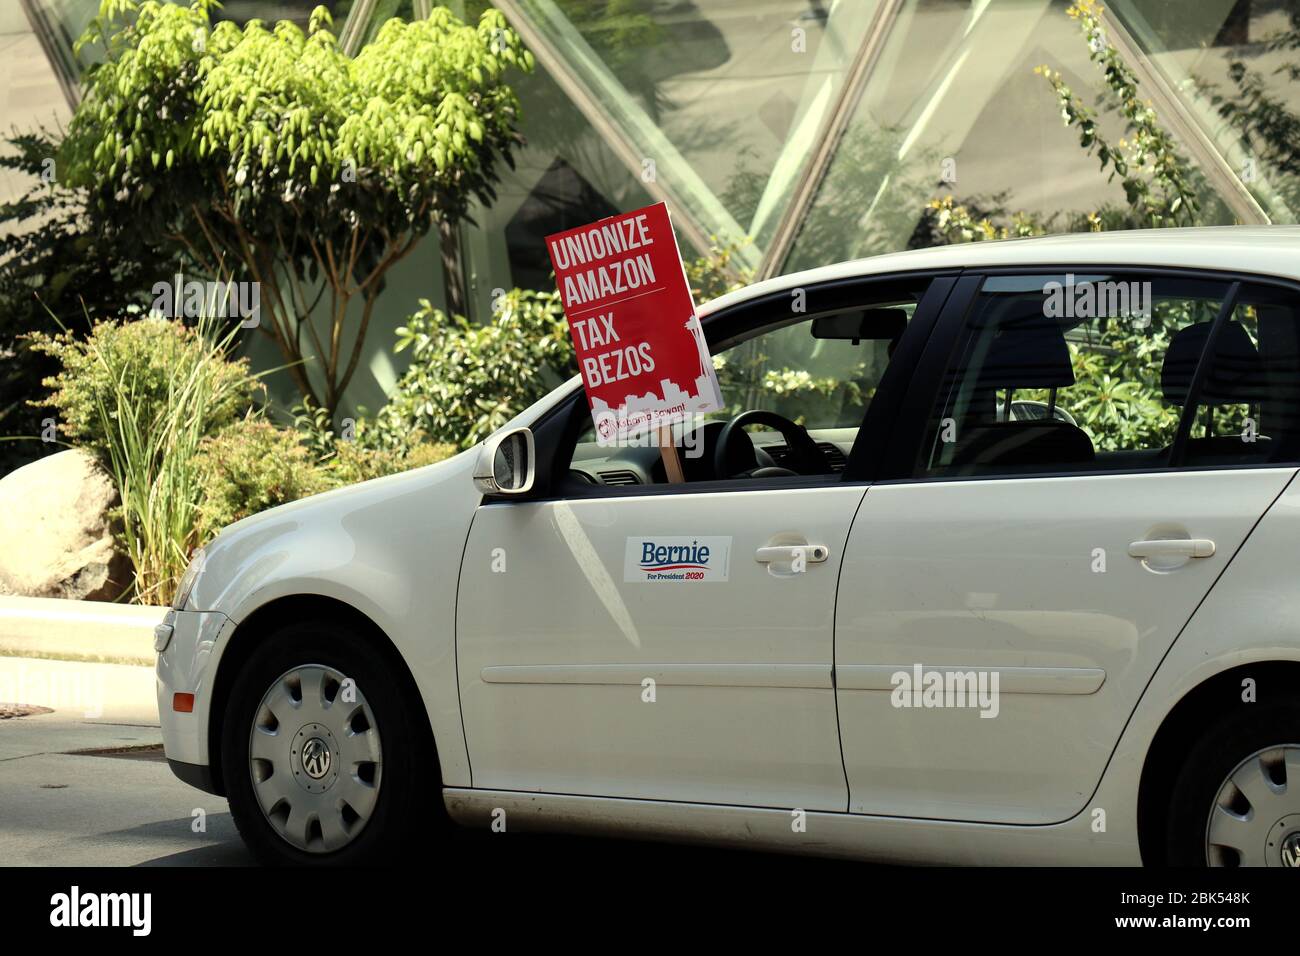 Ein Fahrzeug mit einem Plakat, das während der Demonstration aus dem  Fenster hängt.EINE Karawane von Autos und Radfahrern umkreist das  Amazonashauptquartier, das zur Unterstützung des stadtratmitglieds  demonstriert, Kshama Sawants Vorschlag, neue Steuern